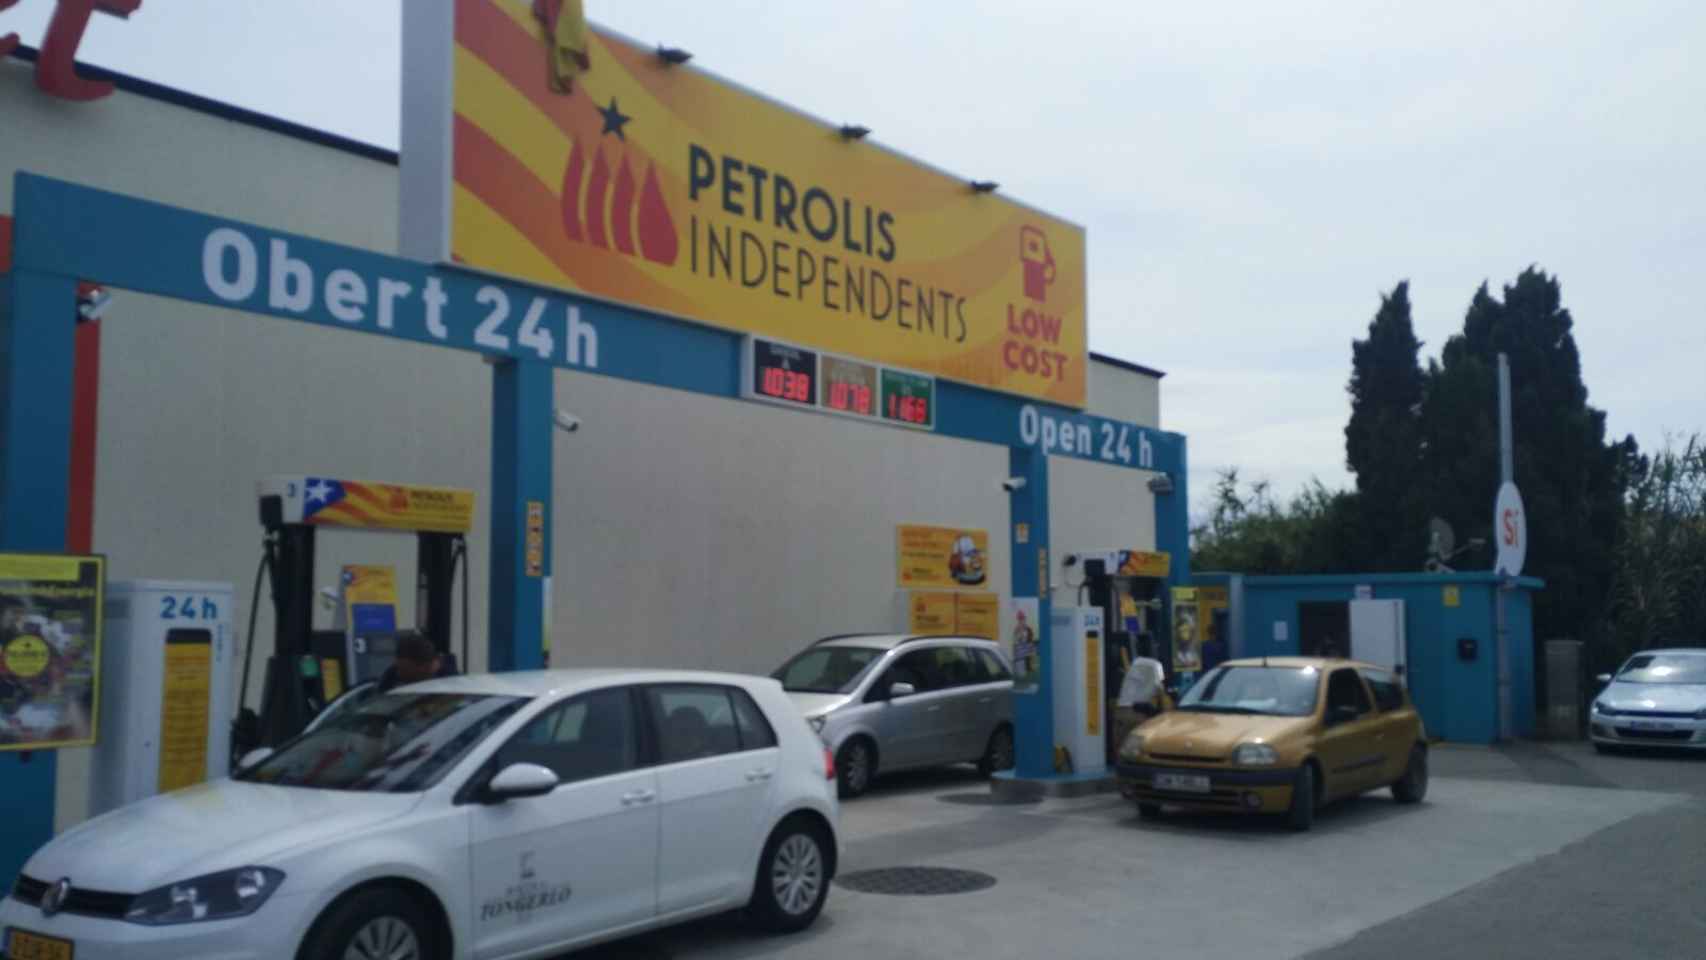 Petrolis Independents.